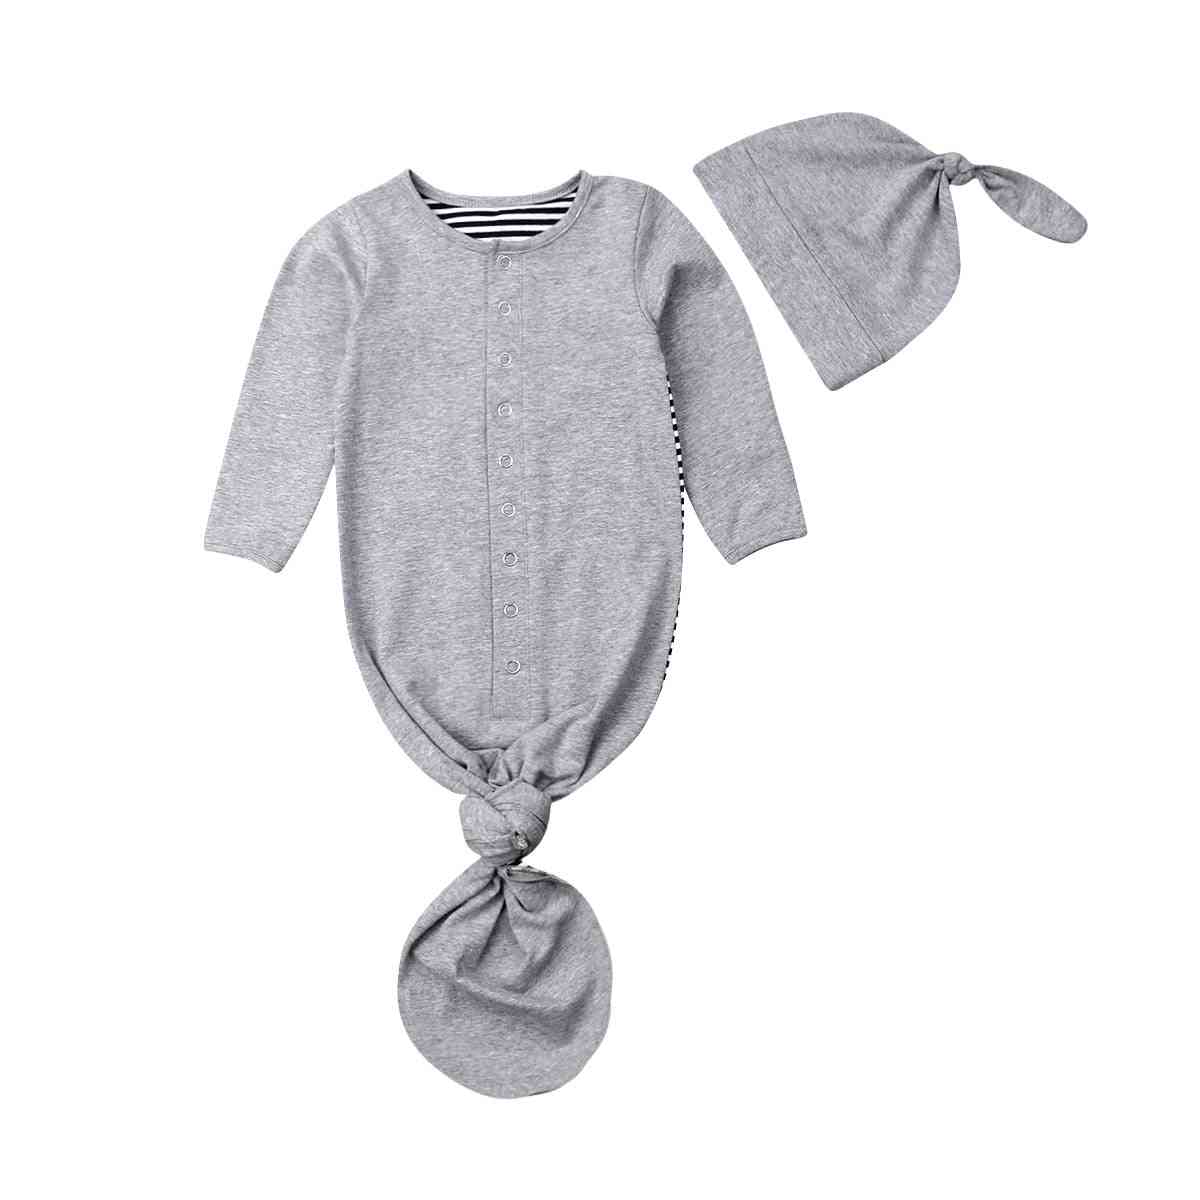 Neugeborene Baby Kleinkind Mädchen / Jungen Decke, Wickel Kinderwagen Wickel Schlafsack gestreifte Baumwolle Decke Hüte